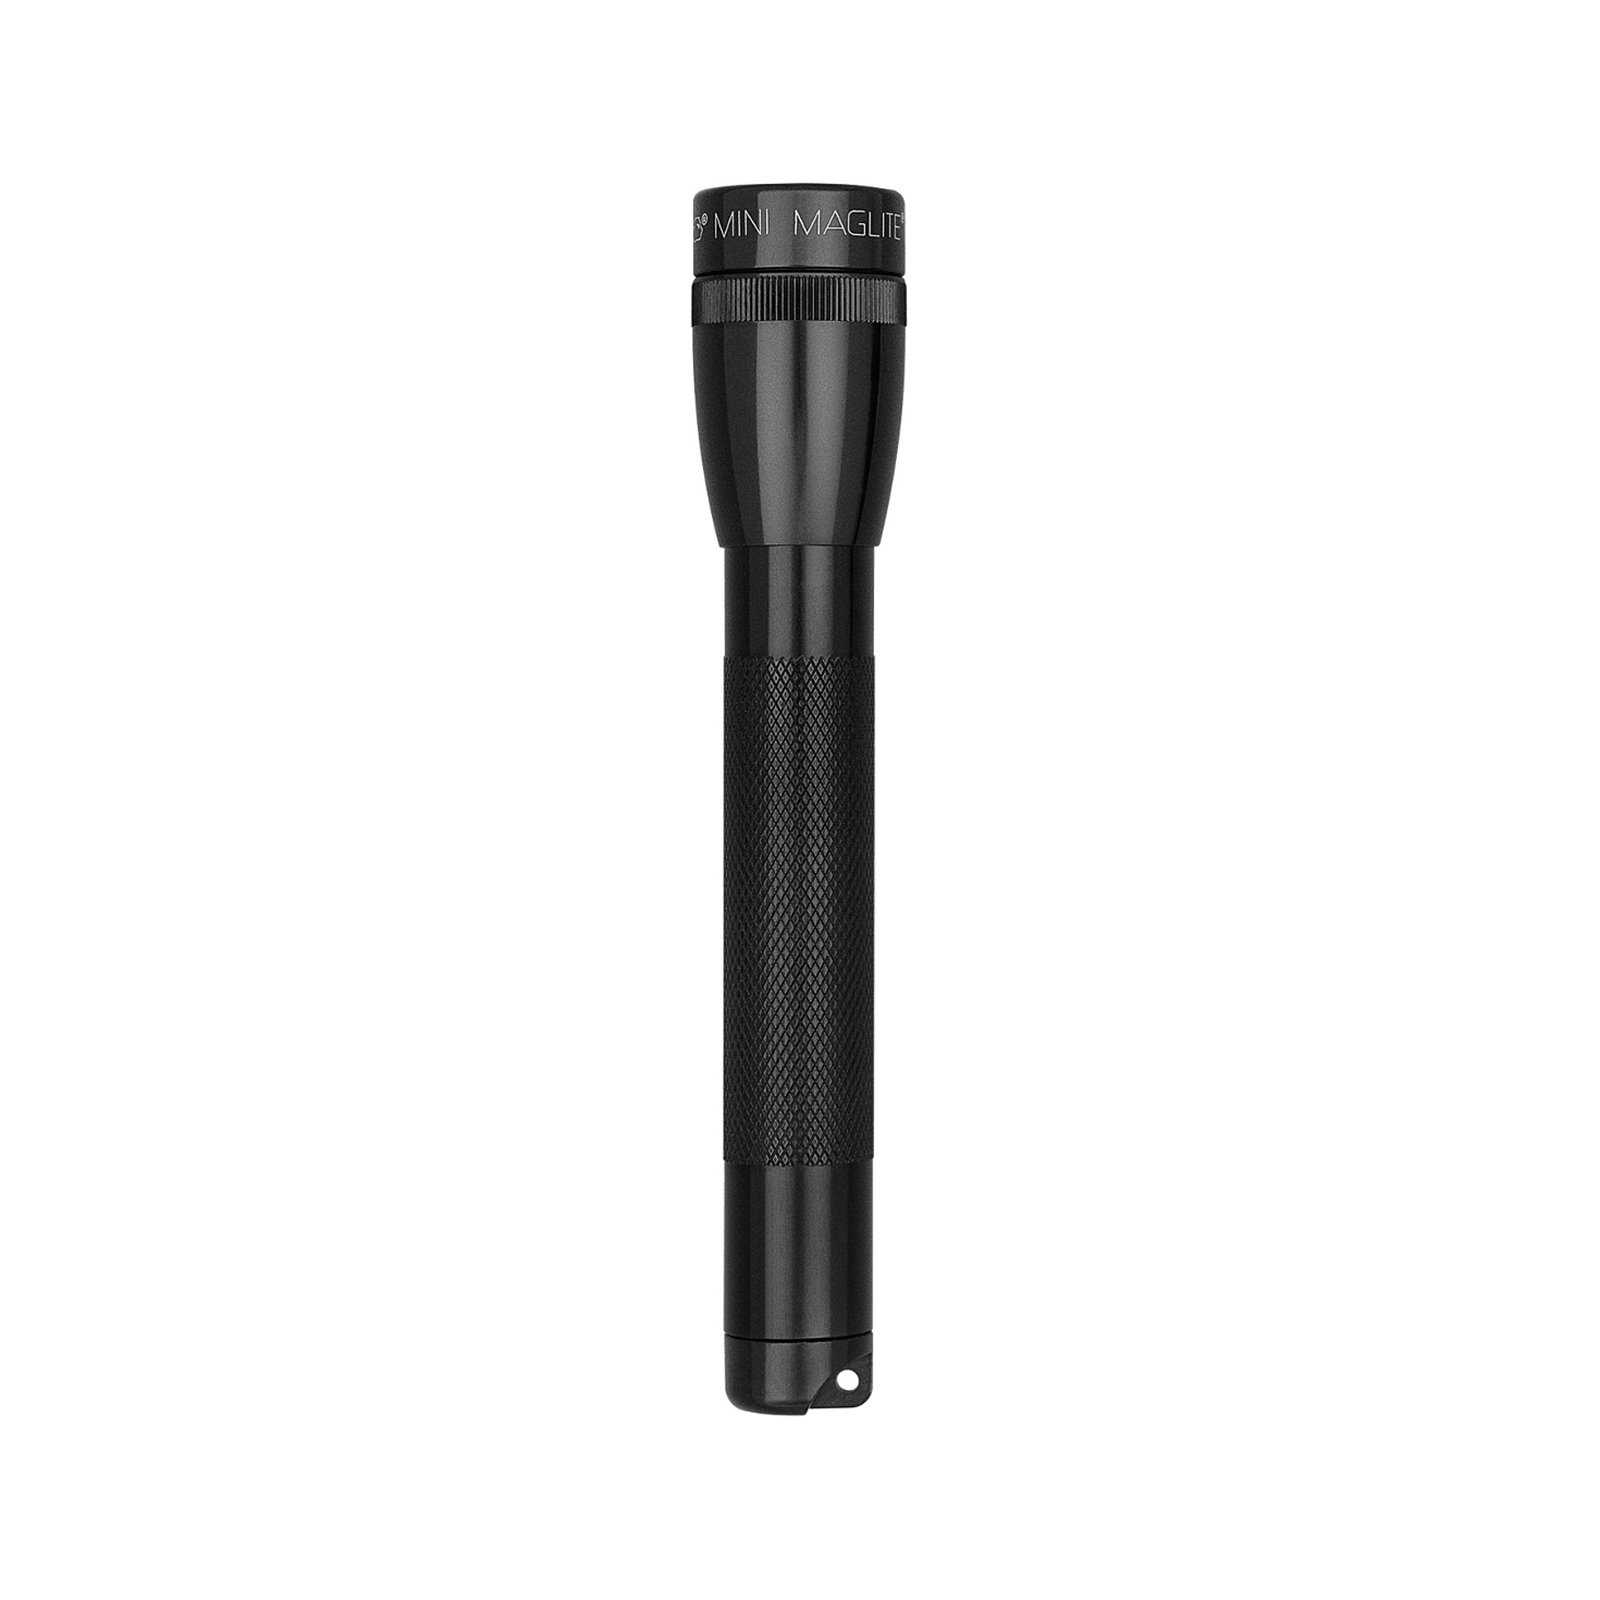 Maglite Xenon torch Mini, 2-Cell AA, with Box, black